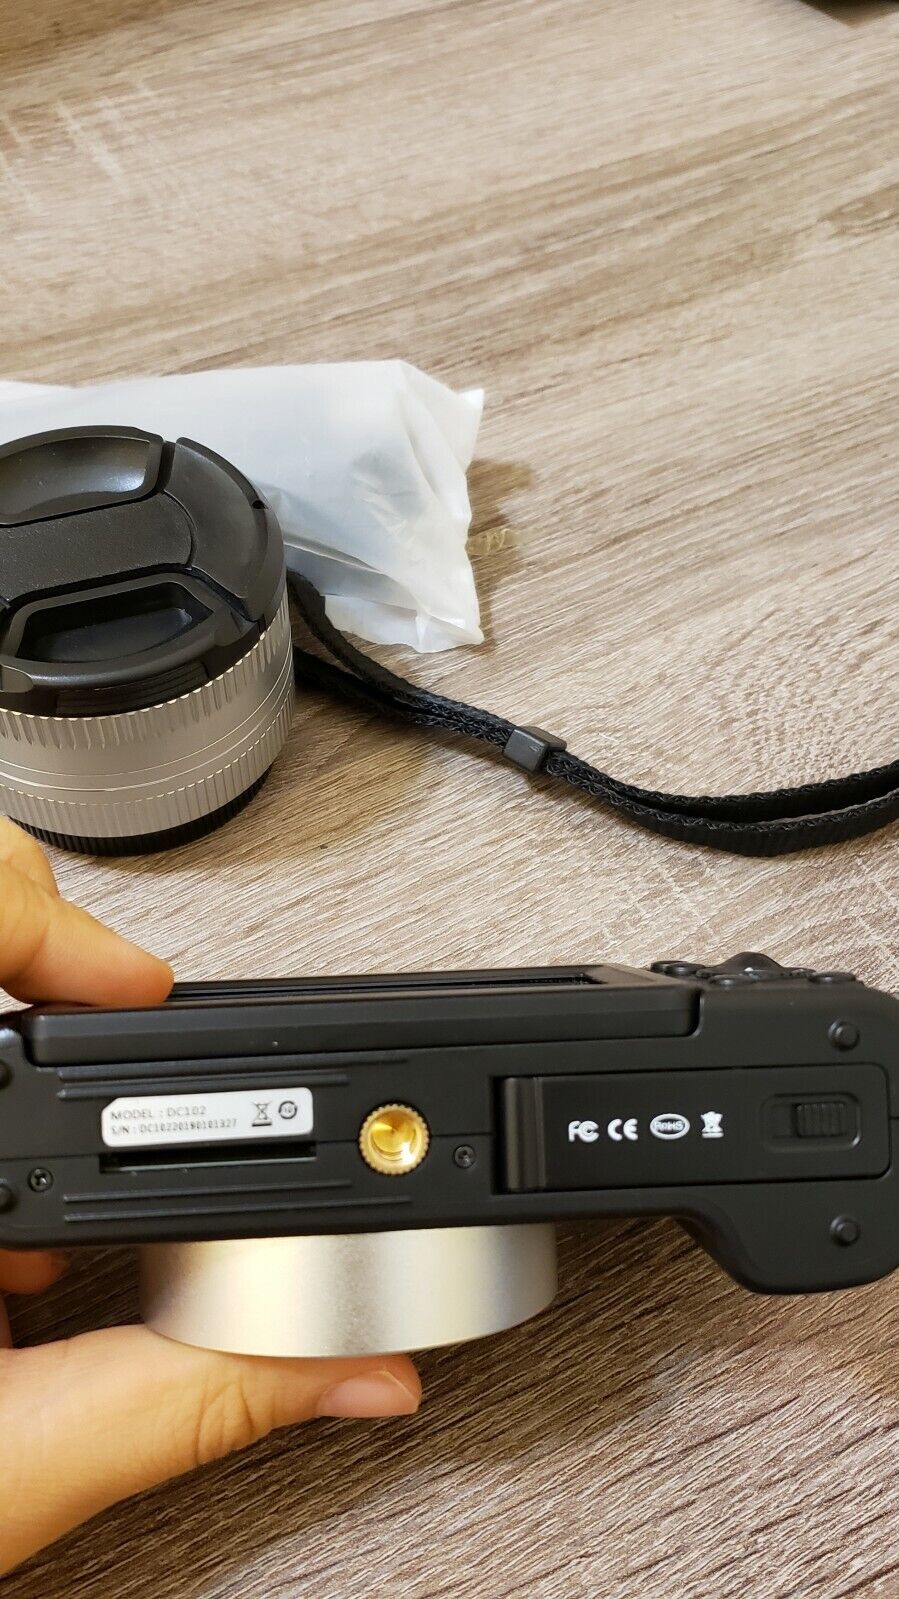 Digital Video Camera Recorder HD1080P 30FPS Black WiFi Function Wyprzedaż limitowana, bardzo popularna